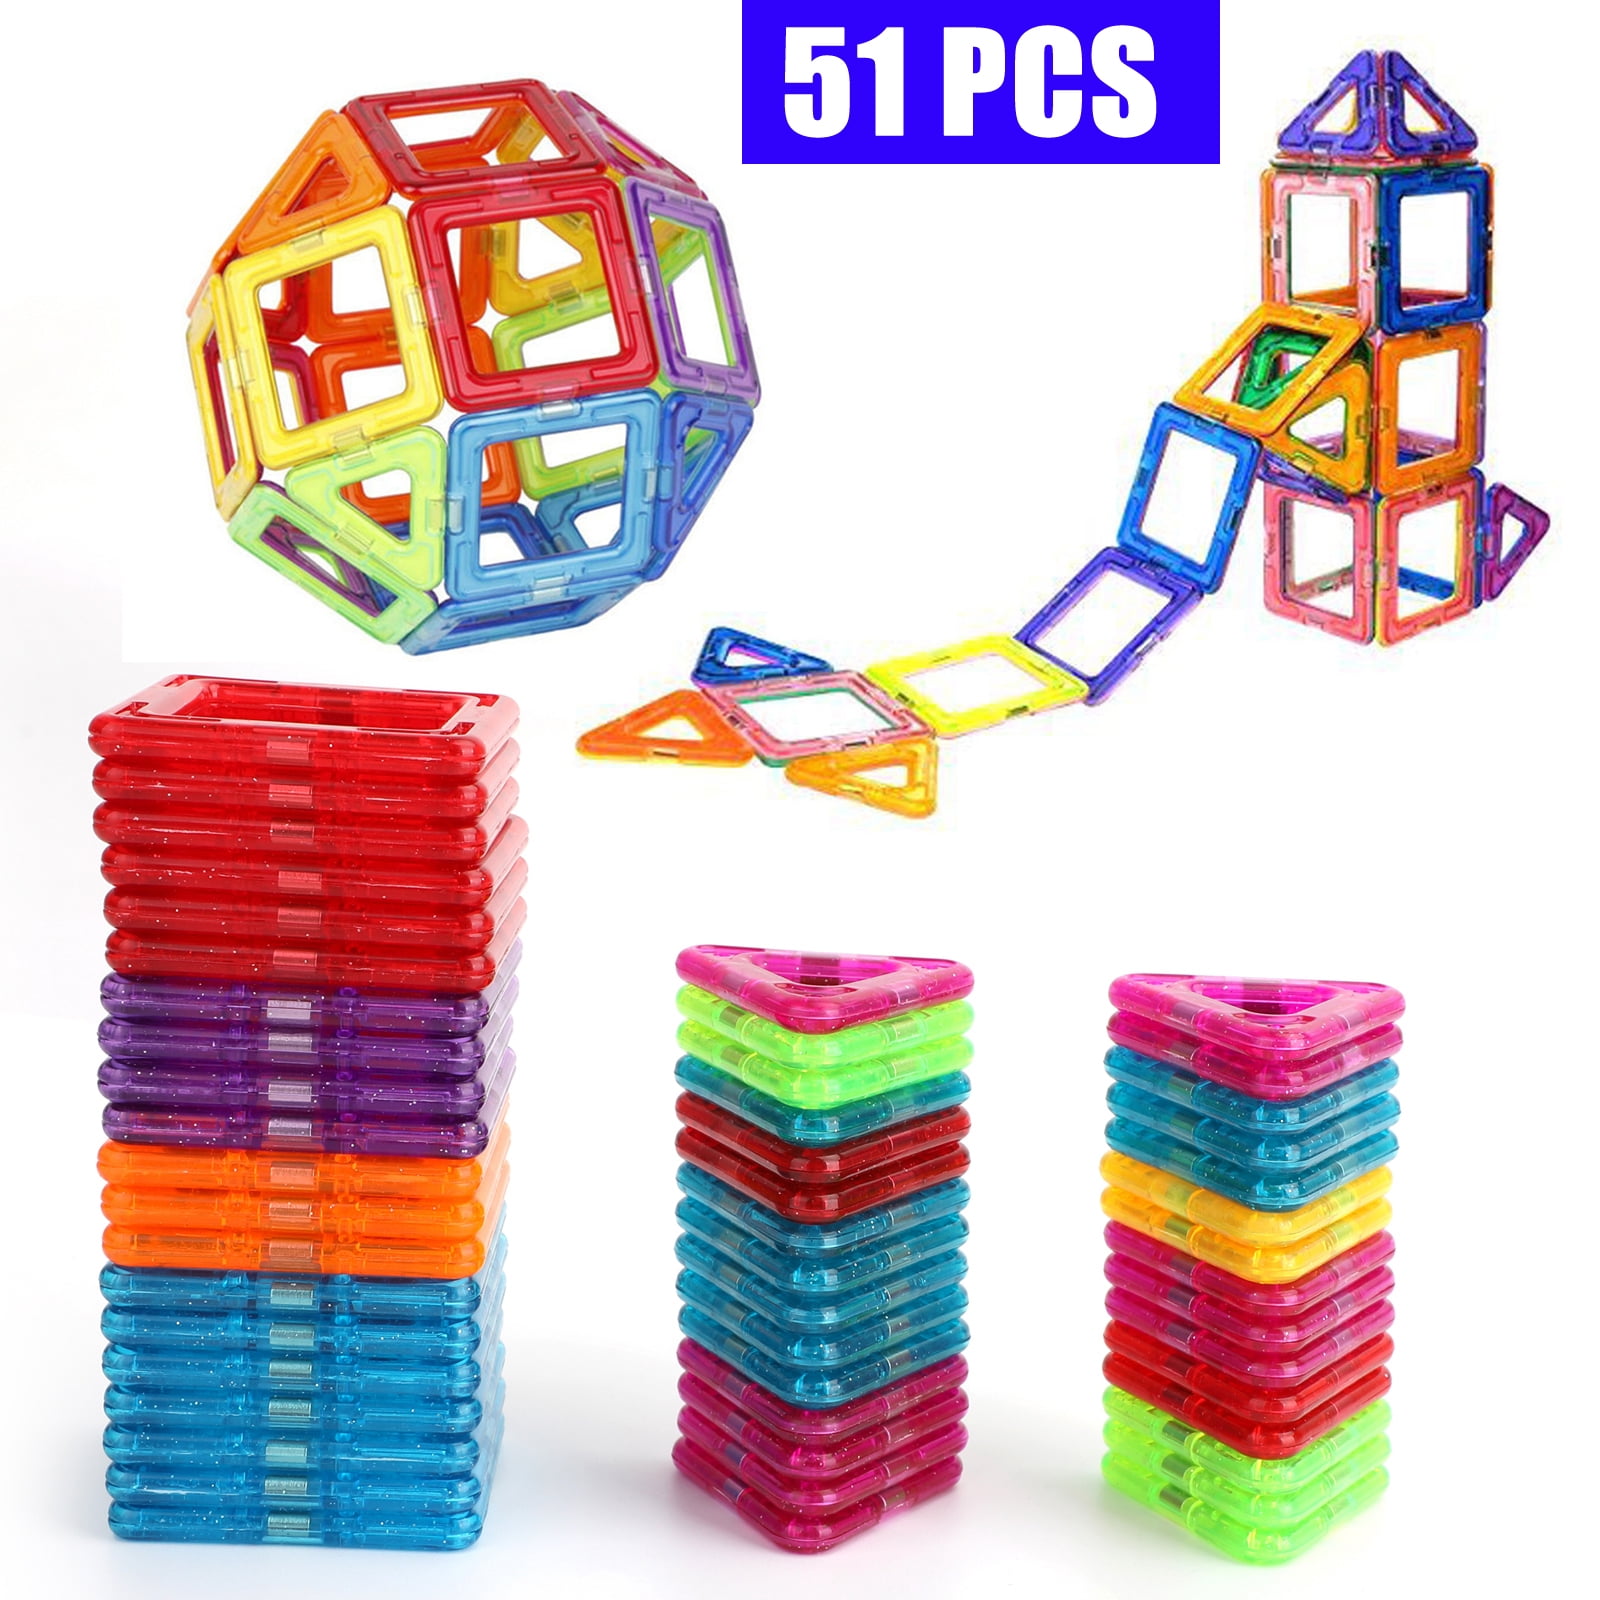 30Pcs Large Size Magnetic Building Blocks Construction Children Educational Toys 